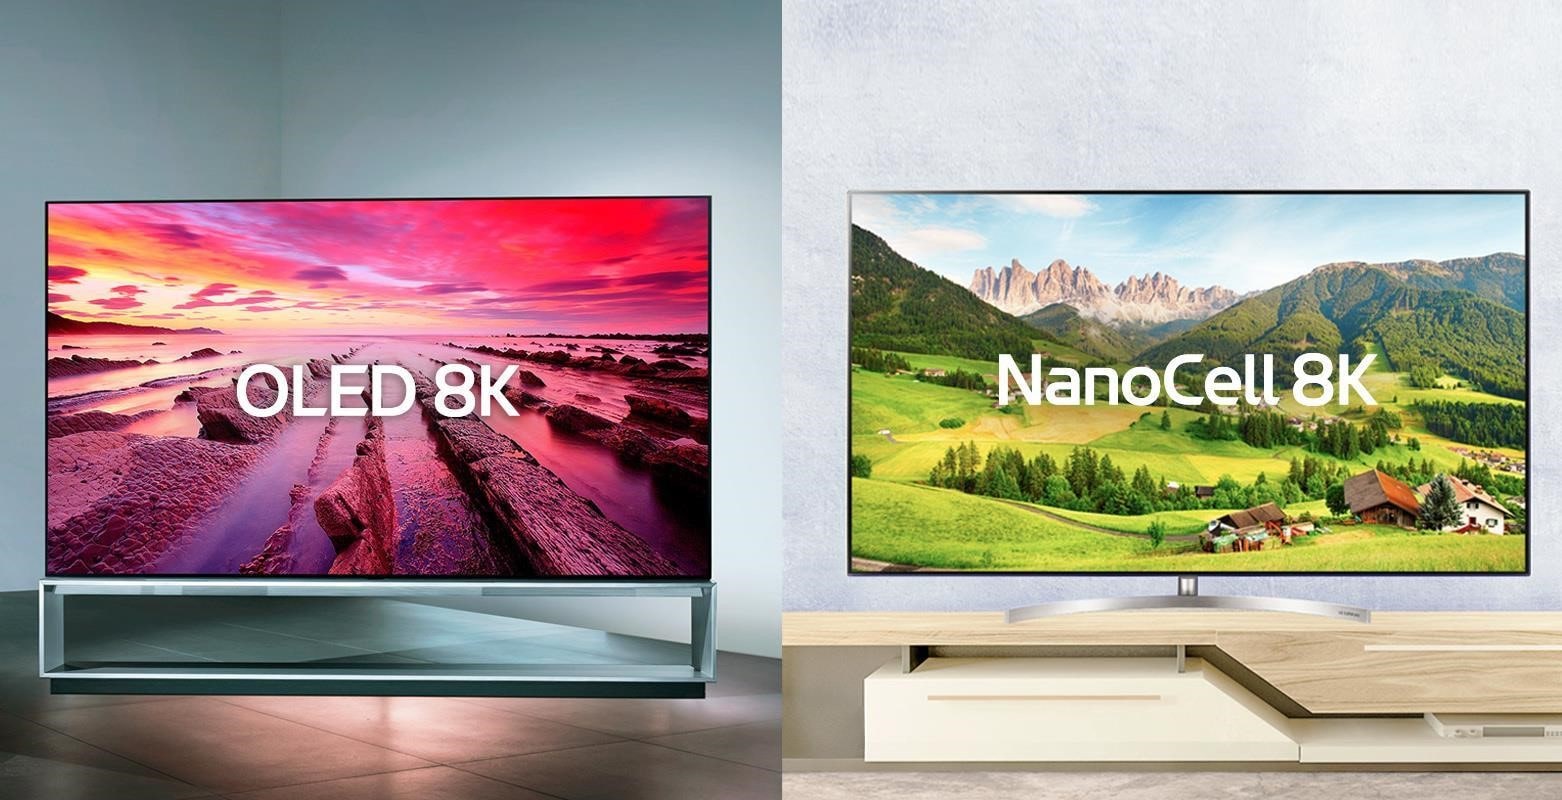 Comparație alăturată a unui televizor OLED 8K și a unui televizor NanoCell 8K.